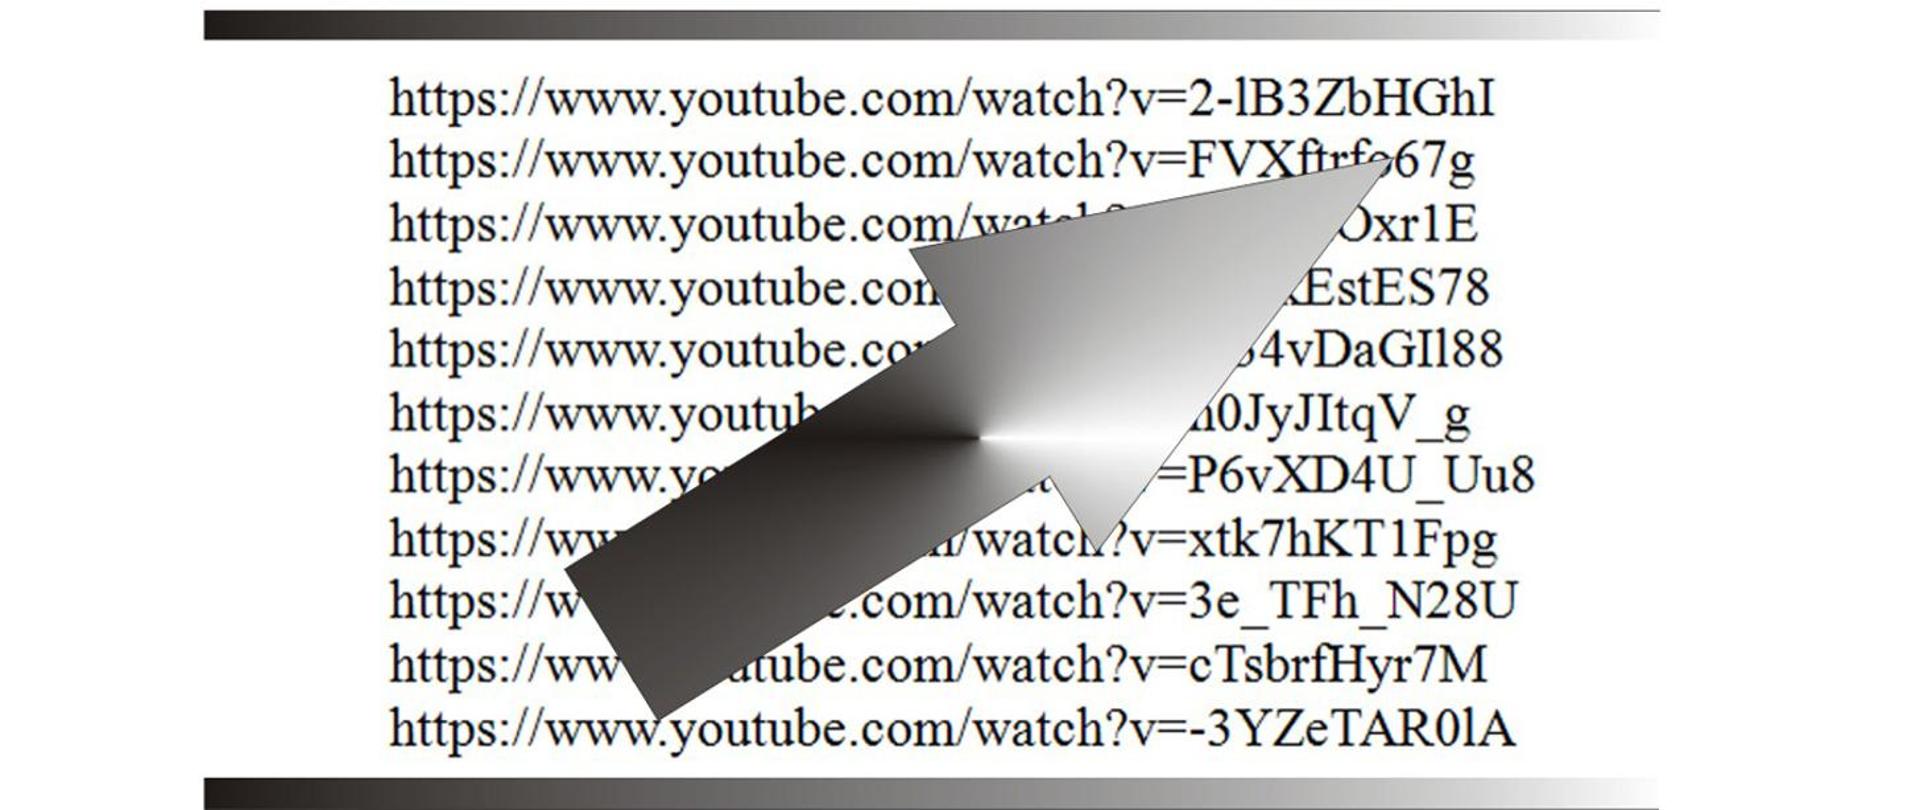 Na zdjęciu widać linki do stron internetowych oraz w centralnej części szarą strzałkę wskazującą jeden z linków.